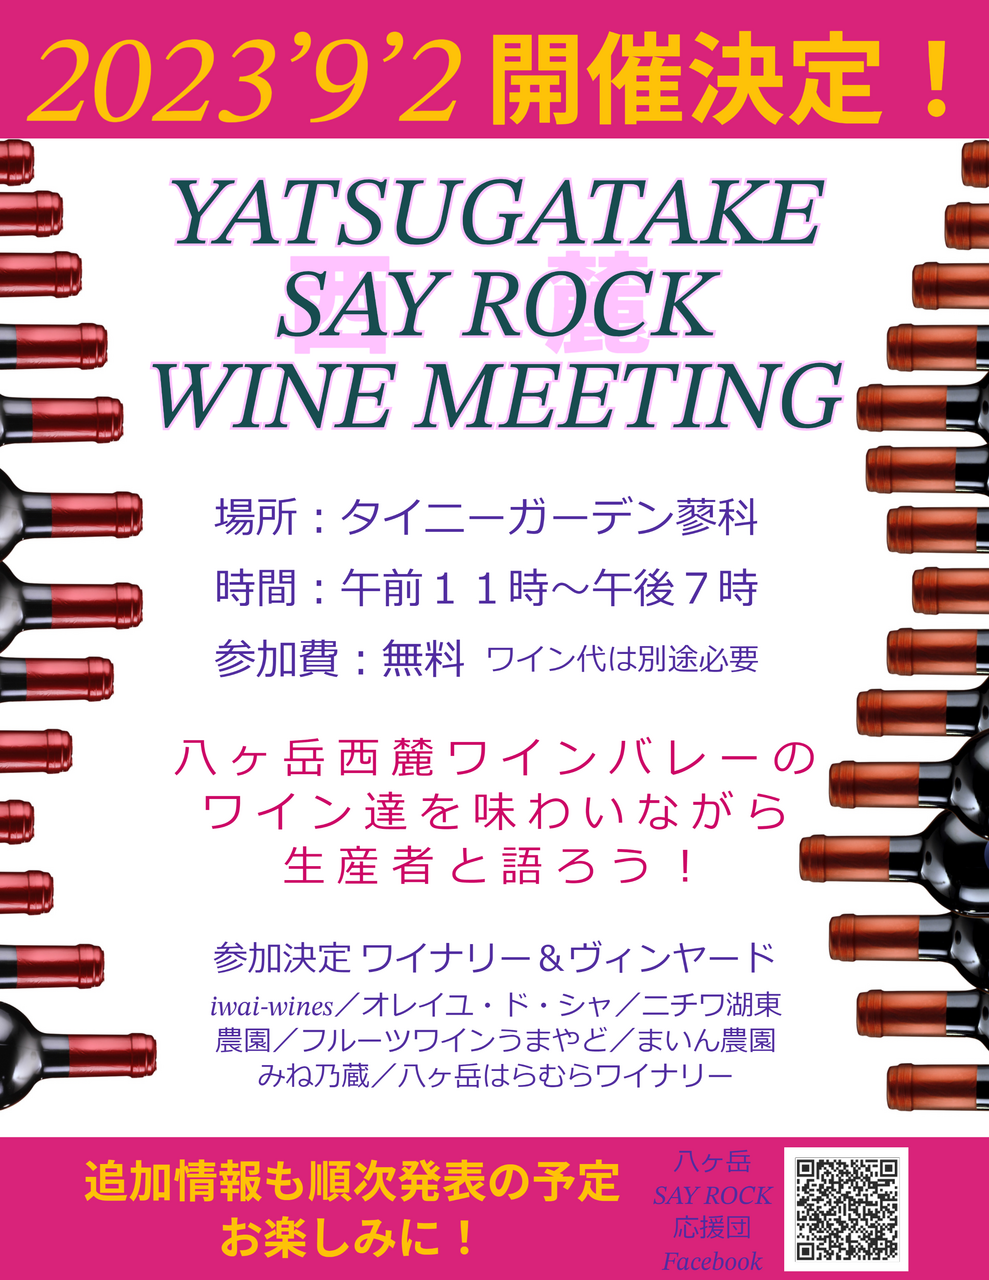 9月2日「YATSUGATAKE SAY ROCK WINE MEETING」開催